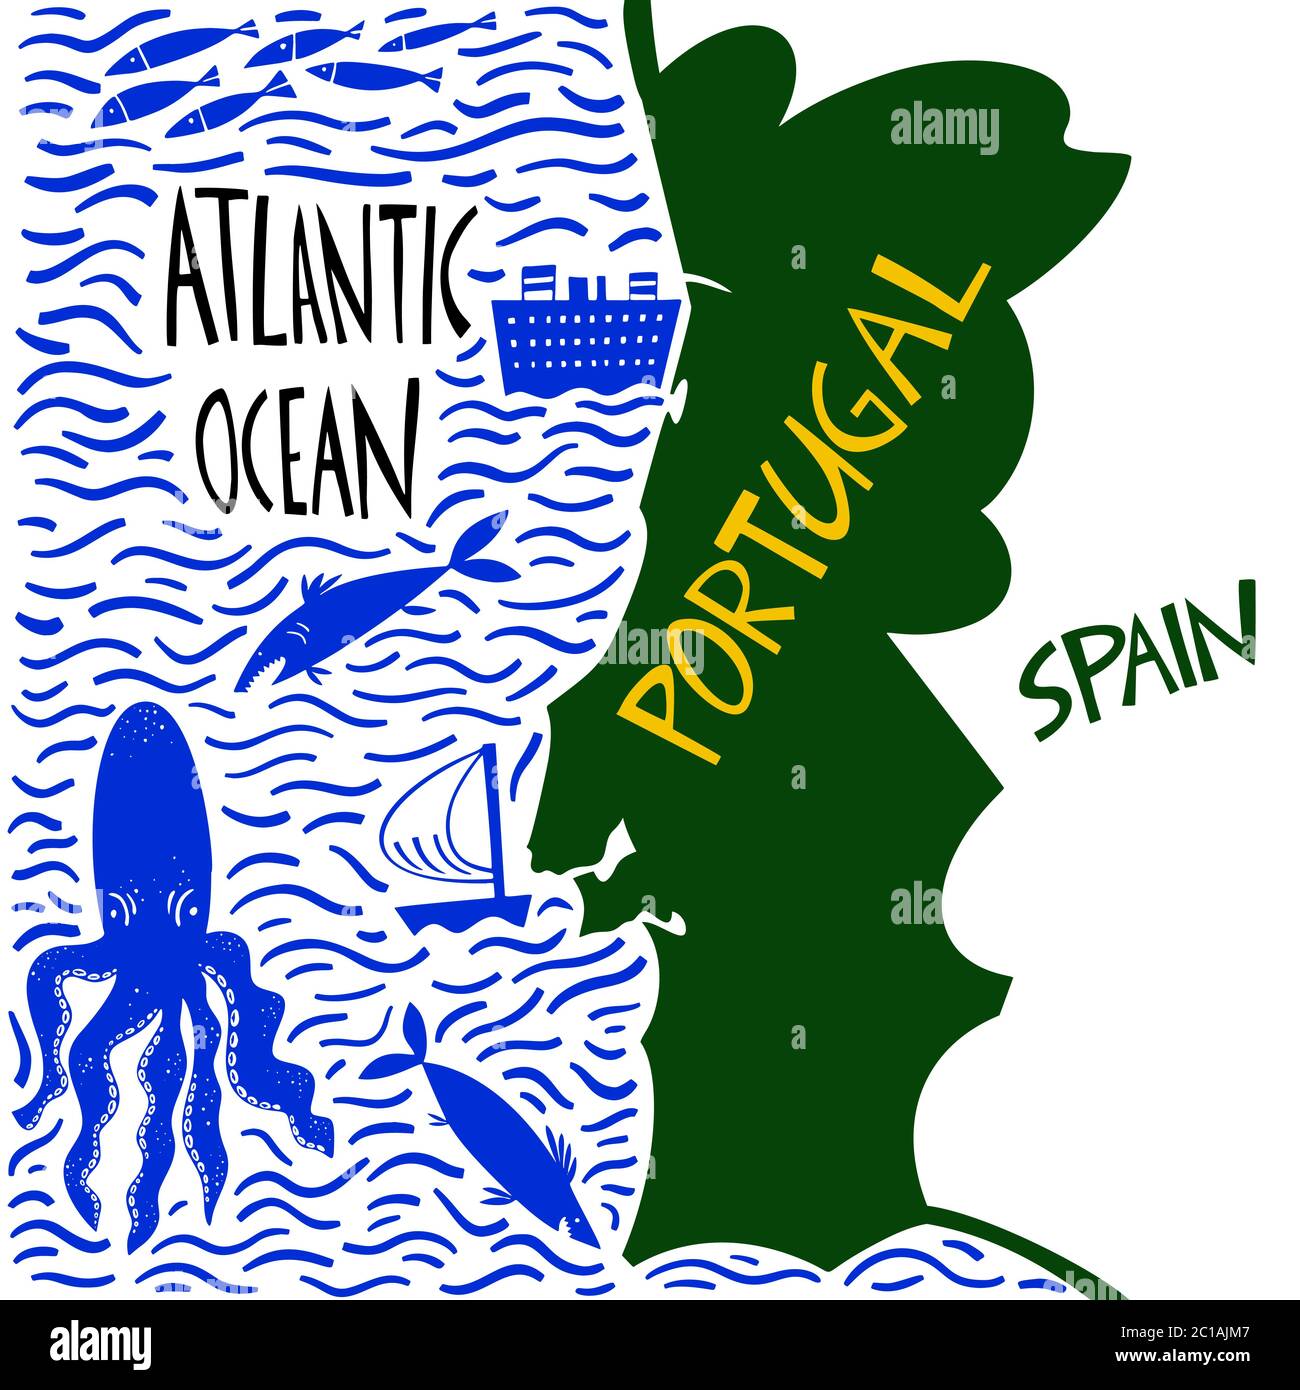 Carte stylisée du Portugal tracée à la main par vecteur. Illustration de voyage de la République portugaise avec noms d'eau. Illustration avec lettrage dessiné à la main. Carte de l'Europe Illustration de Vecteur